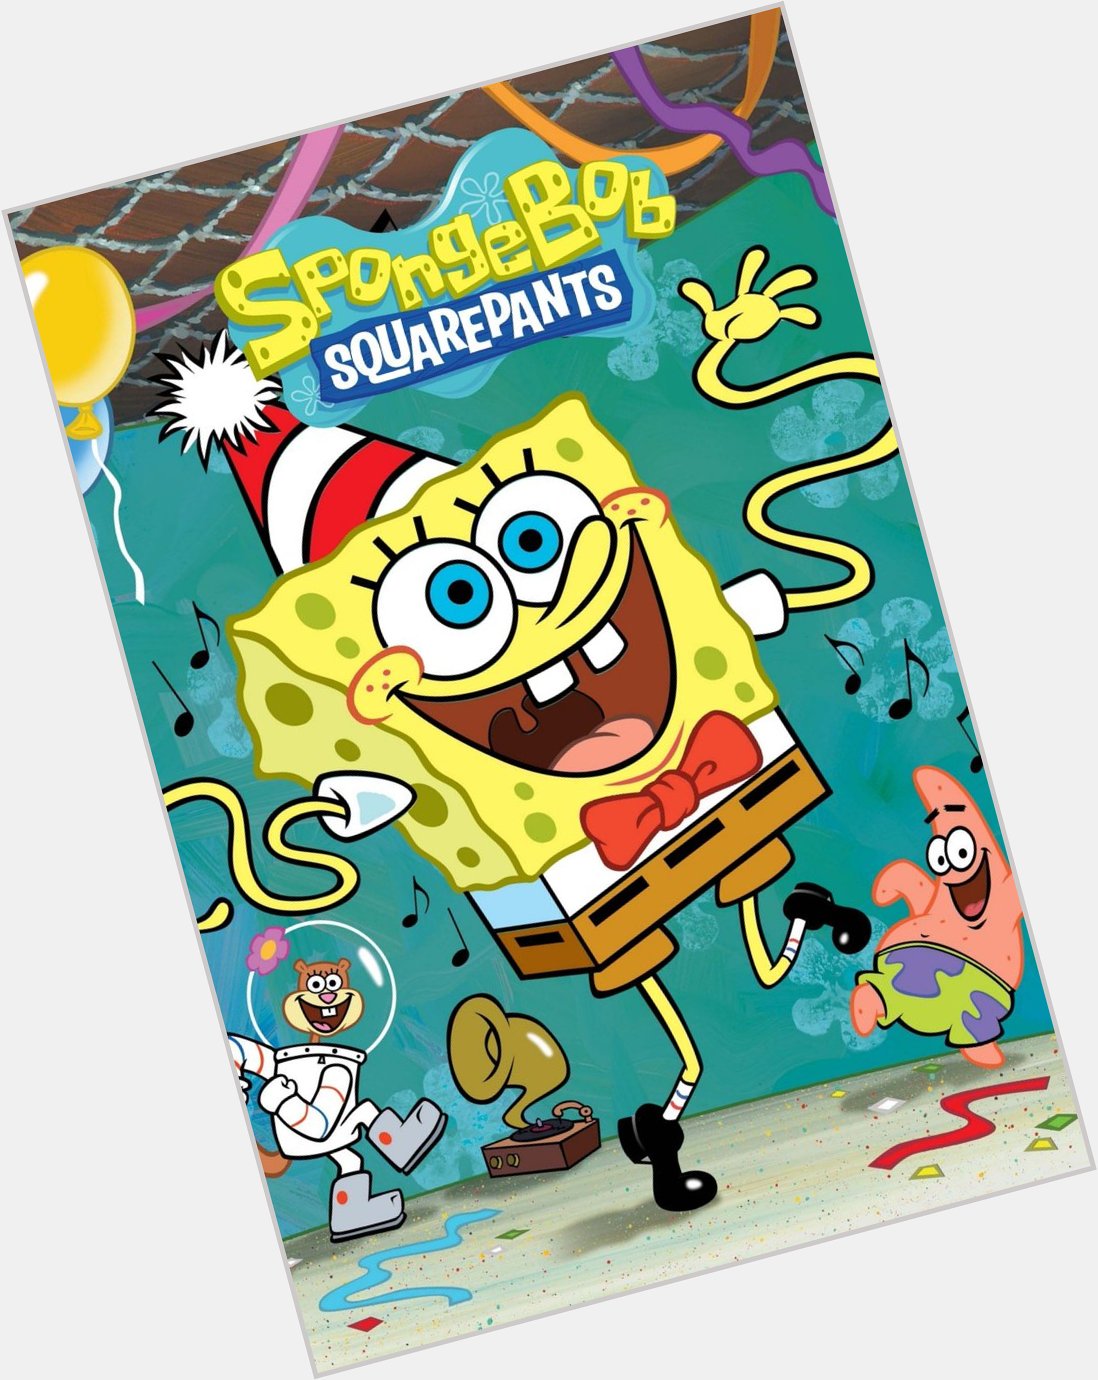 Happy birthday to Spongebob Squarepants!!!   